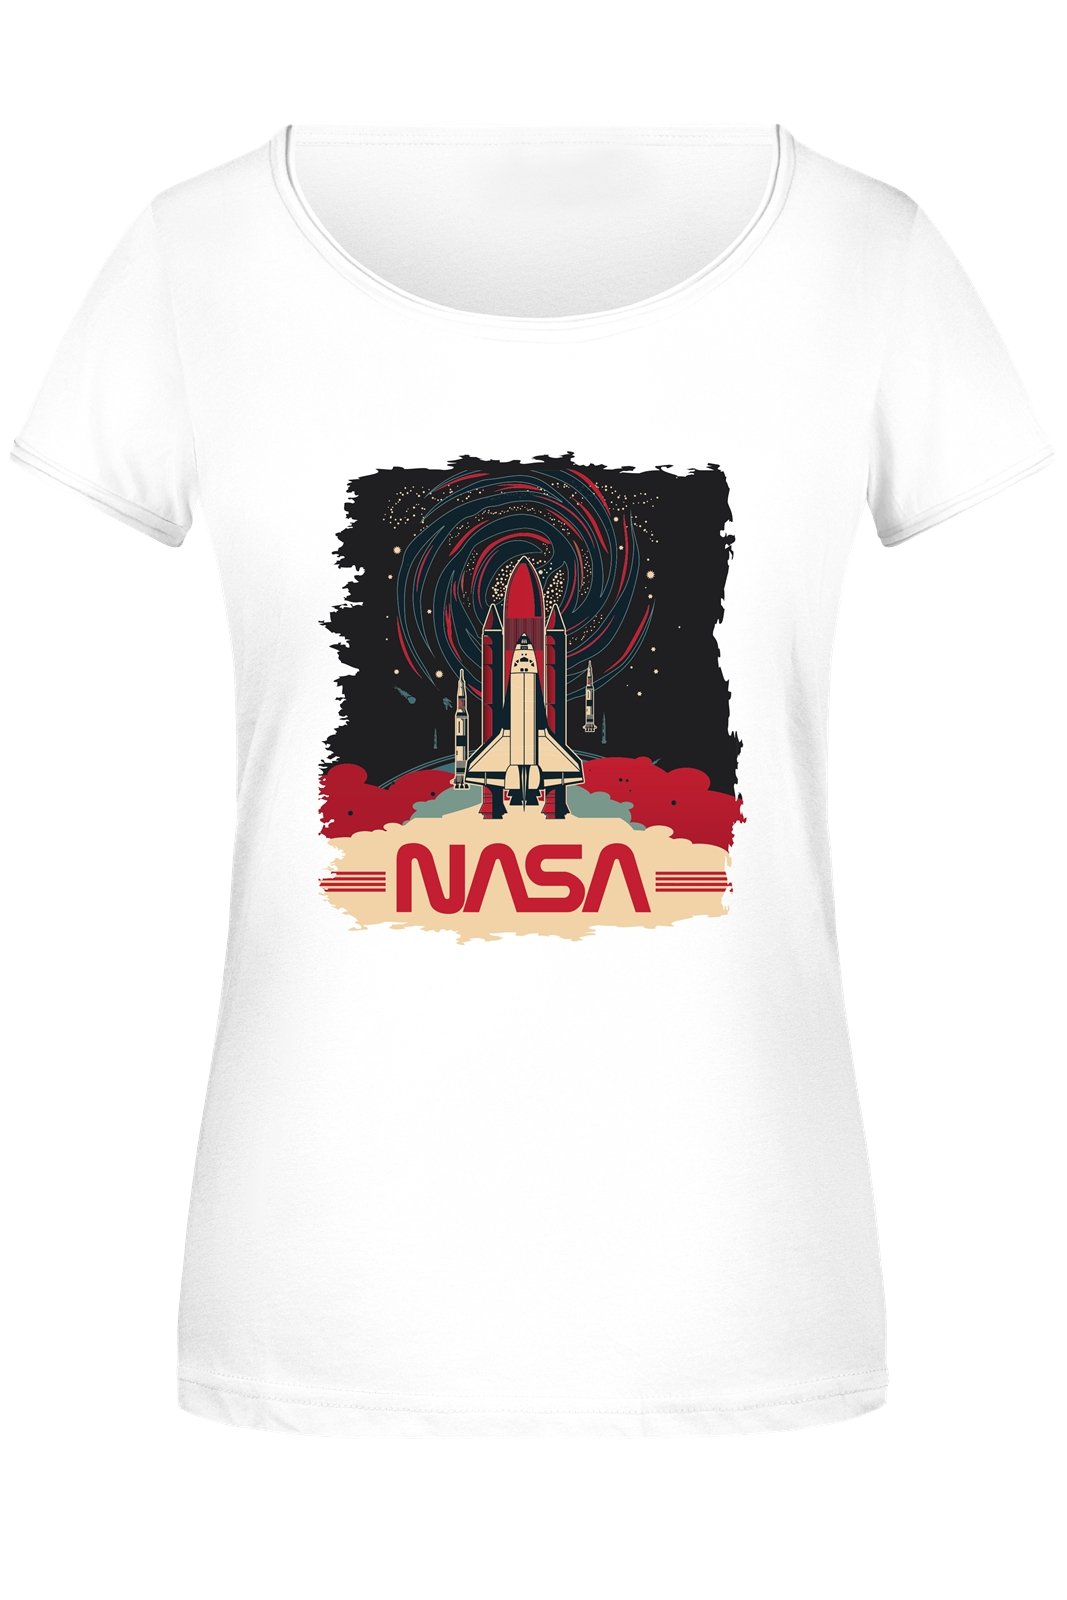 Bild: T-Shirt Damen - NASA Space Shuttle Geschenkidee